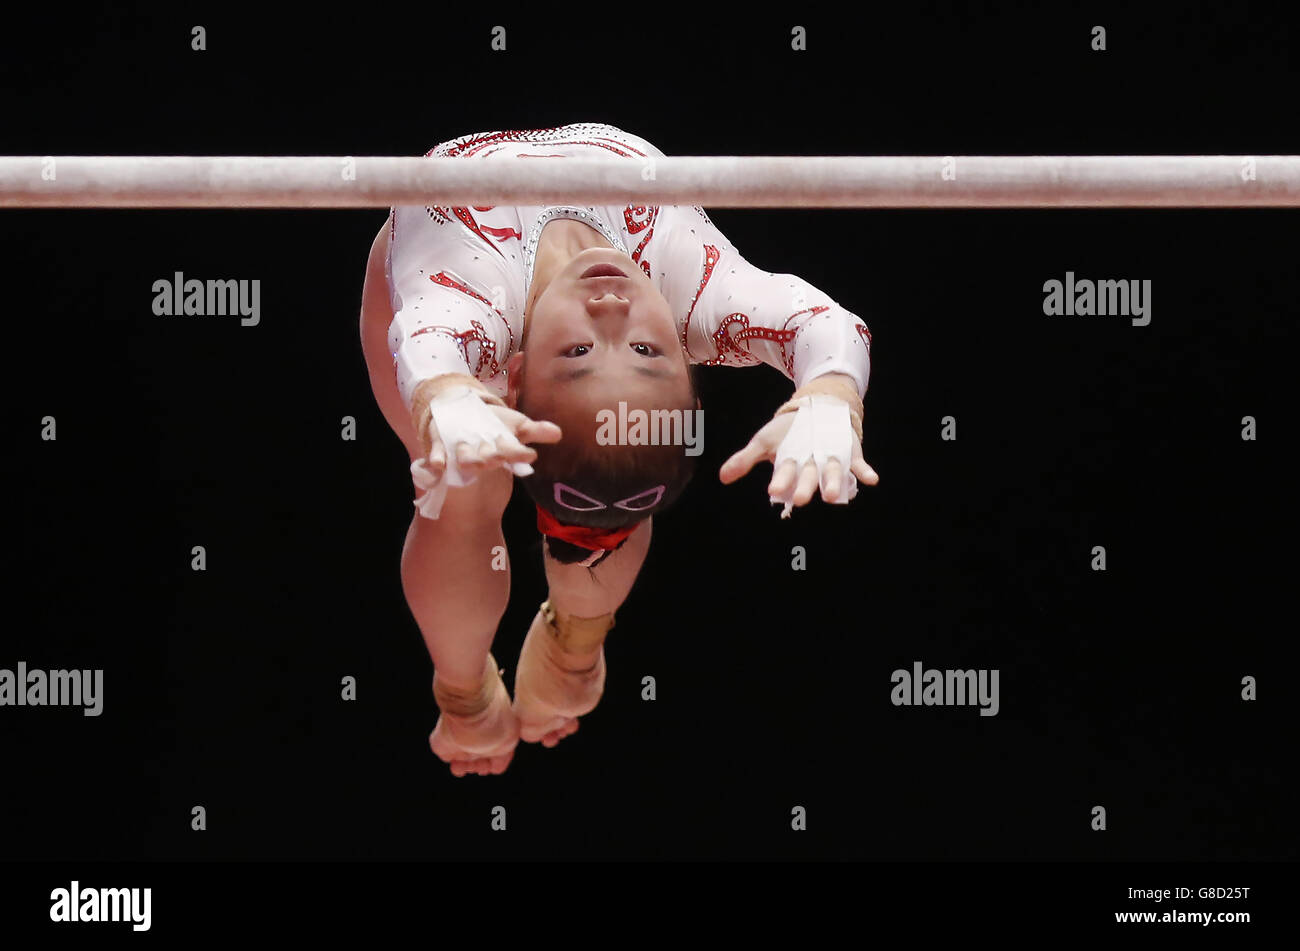 Gymnastik - Weltmeisterschaften 2015 - Tag zwei - das SSE Hydro. Der chinesische Jiaxin Tan tritt am zweiten Tag der Weltmeisterschaften der Gymnastik 2015 bei der SSE Hydro, Glasgow, an den parallelen Riegel an. Stockfoto